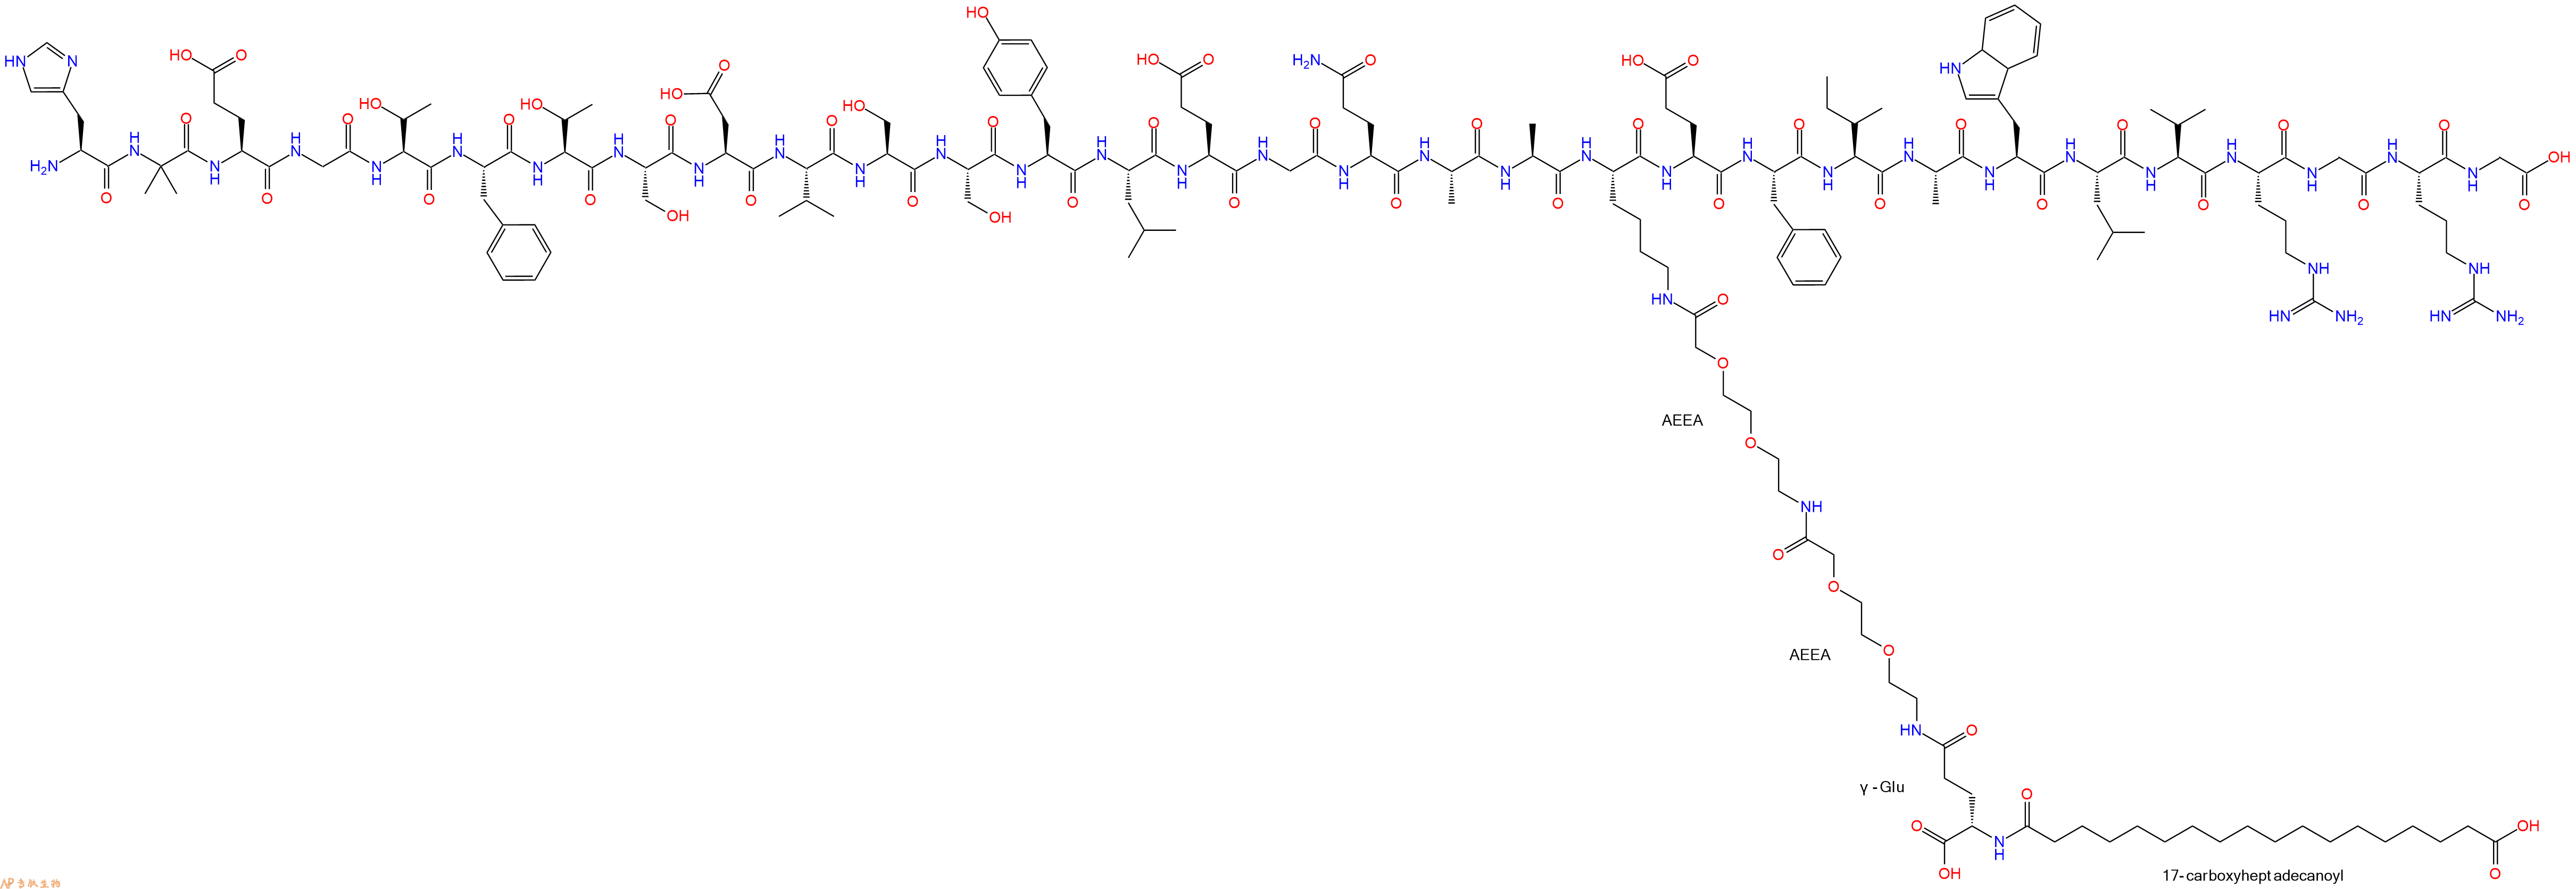 索马鲁肽的结构和序列|多肽结构计算器一键画出索马鲁肽的结构图